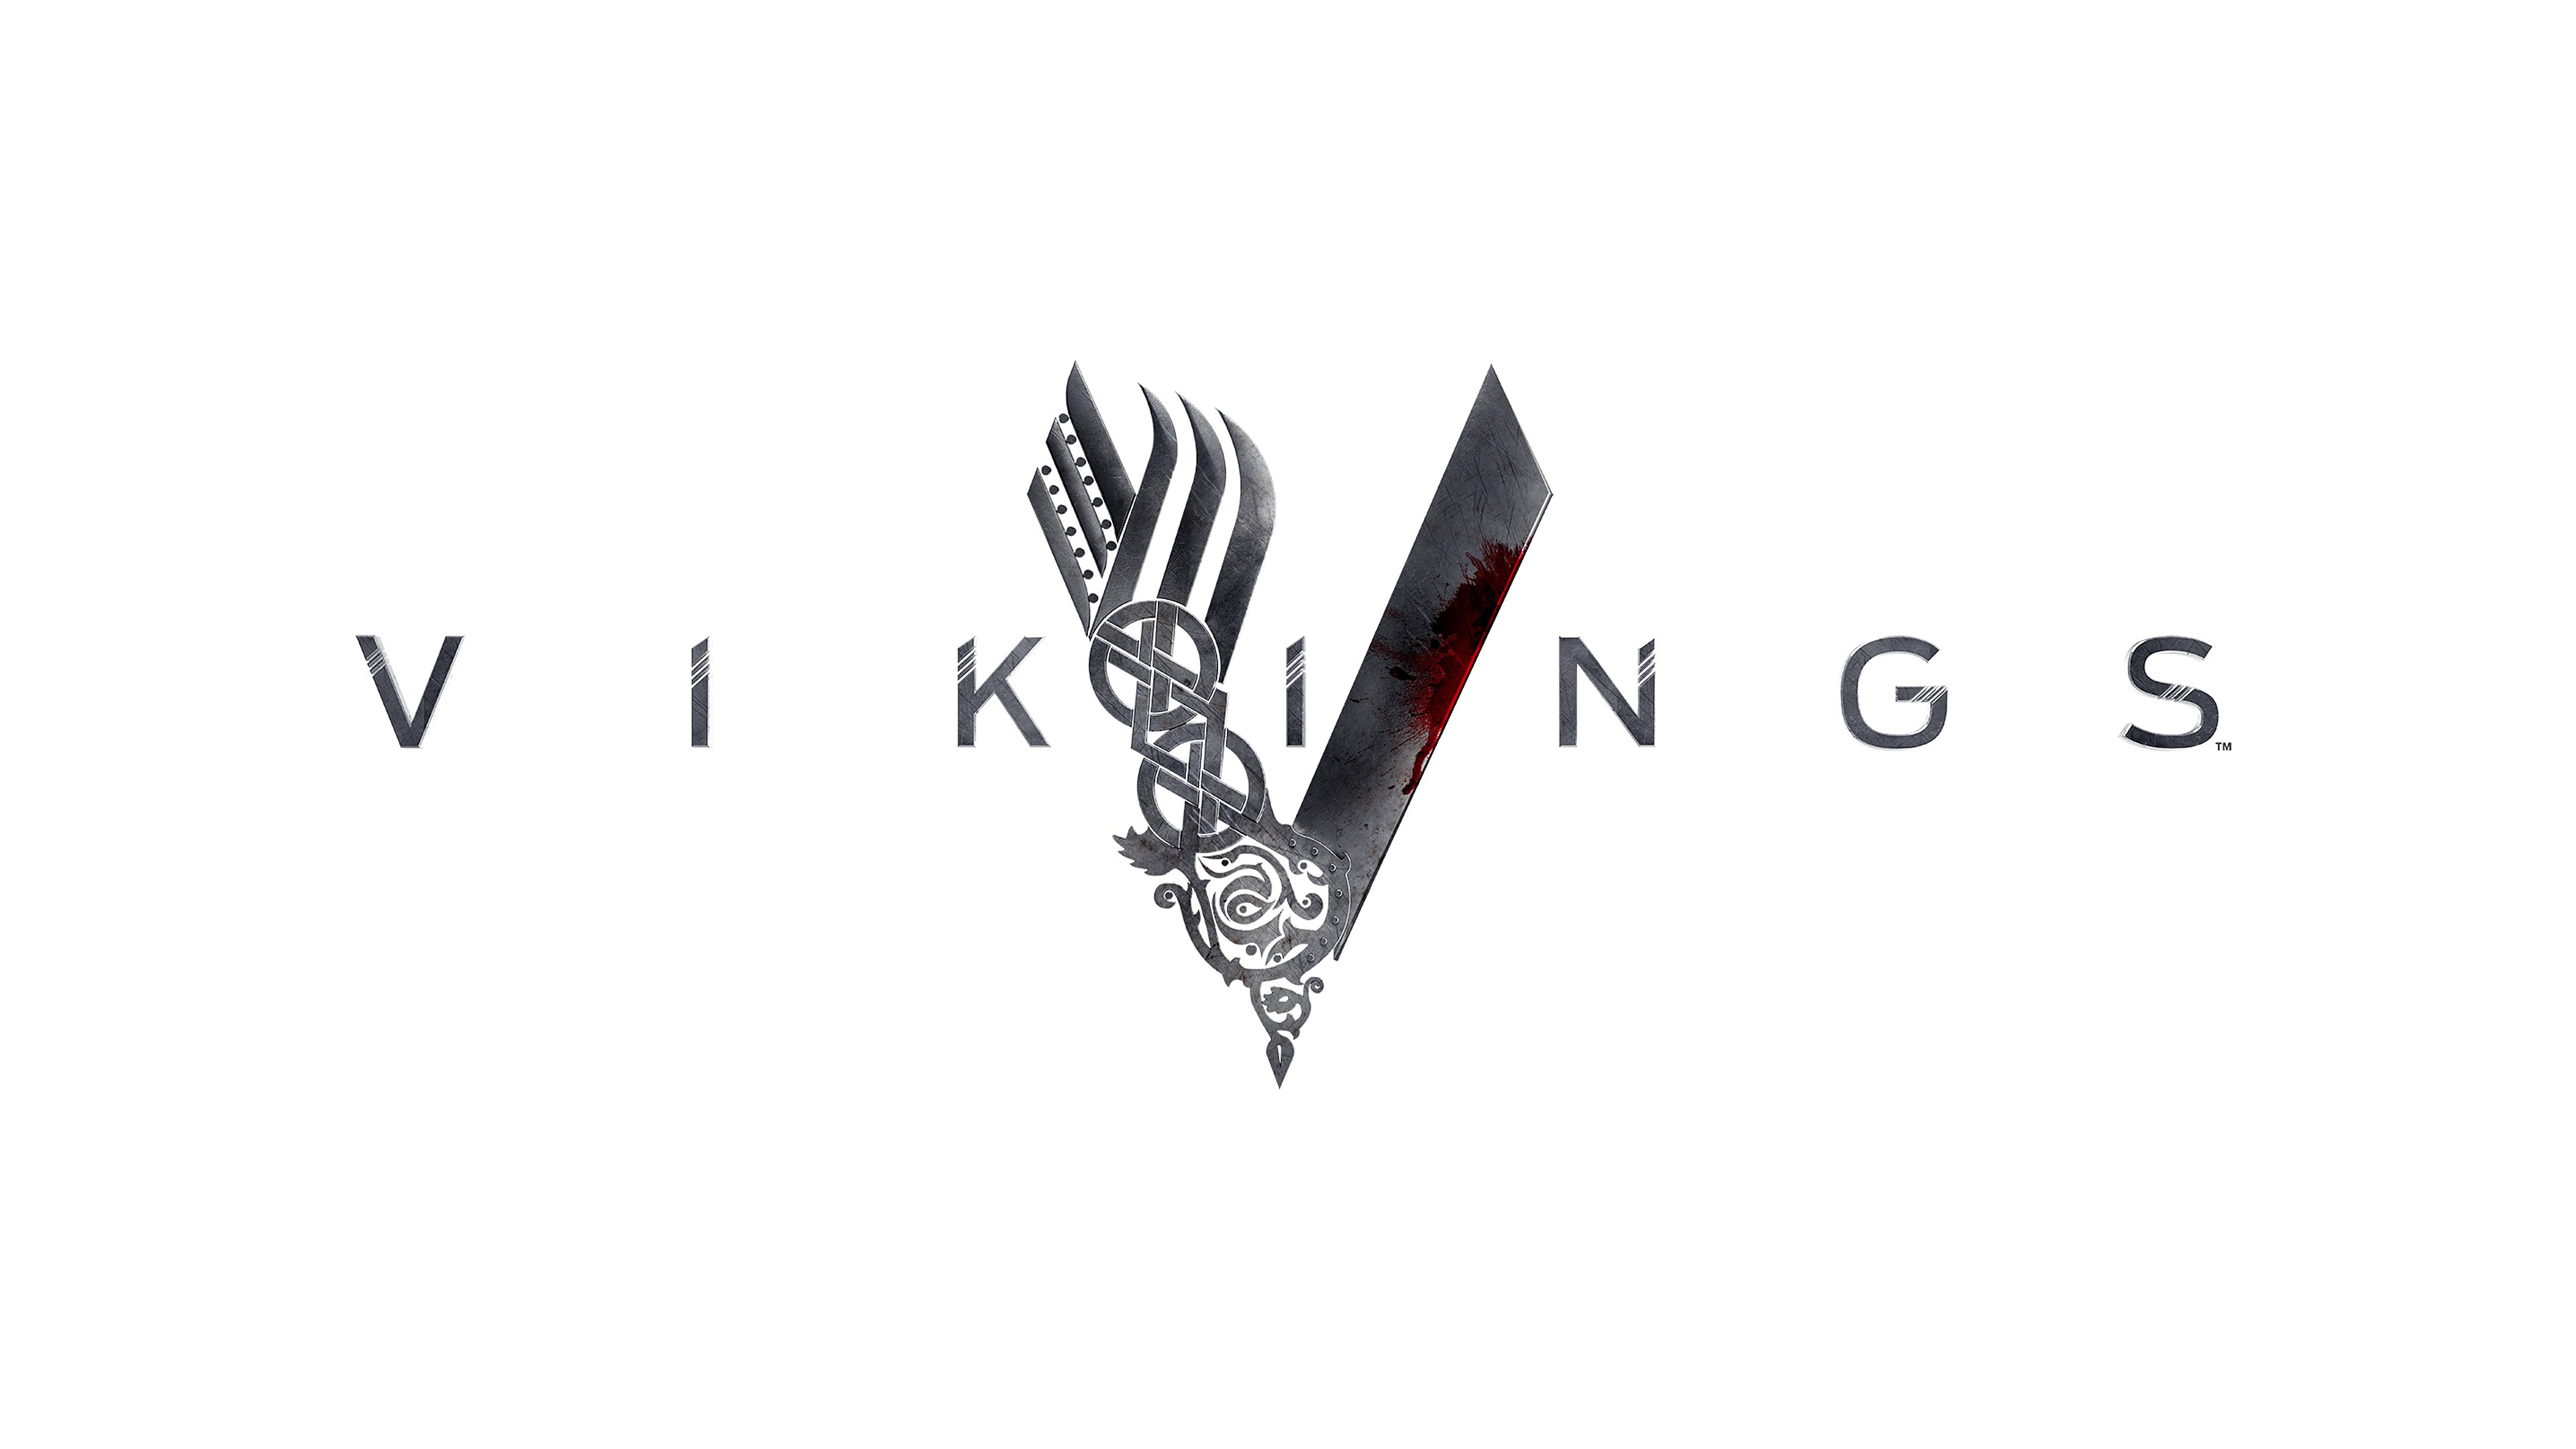 General 3840x2160 Vikings (TV series) logo TV series digital art simple background